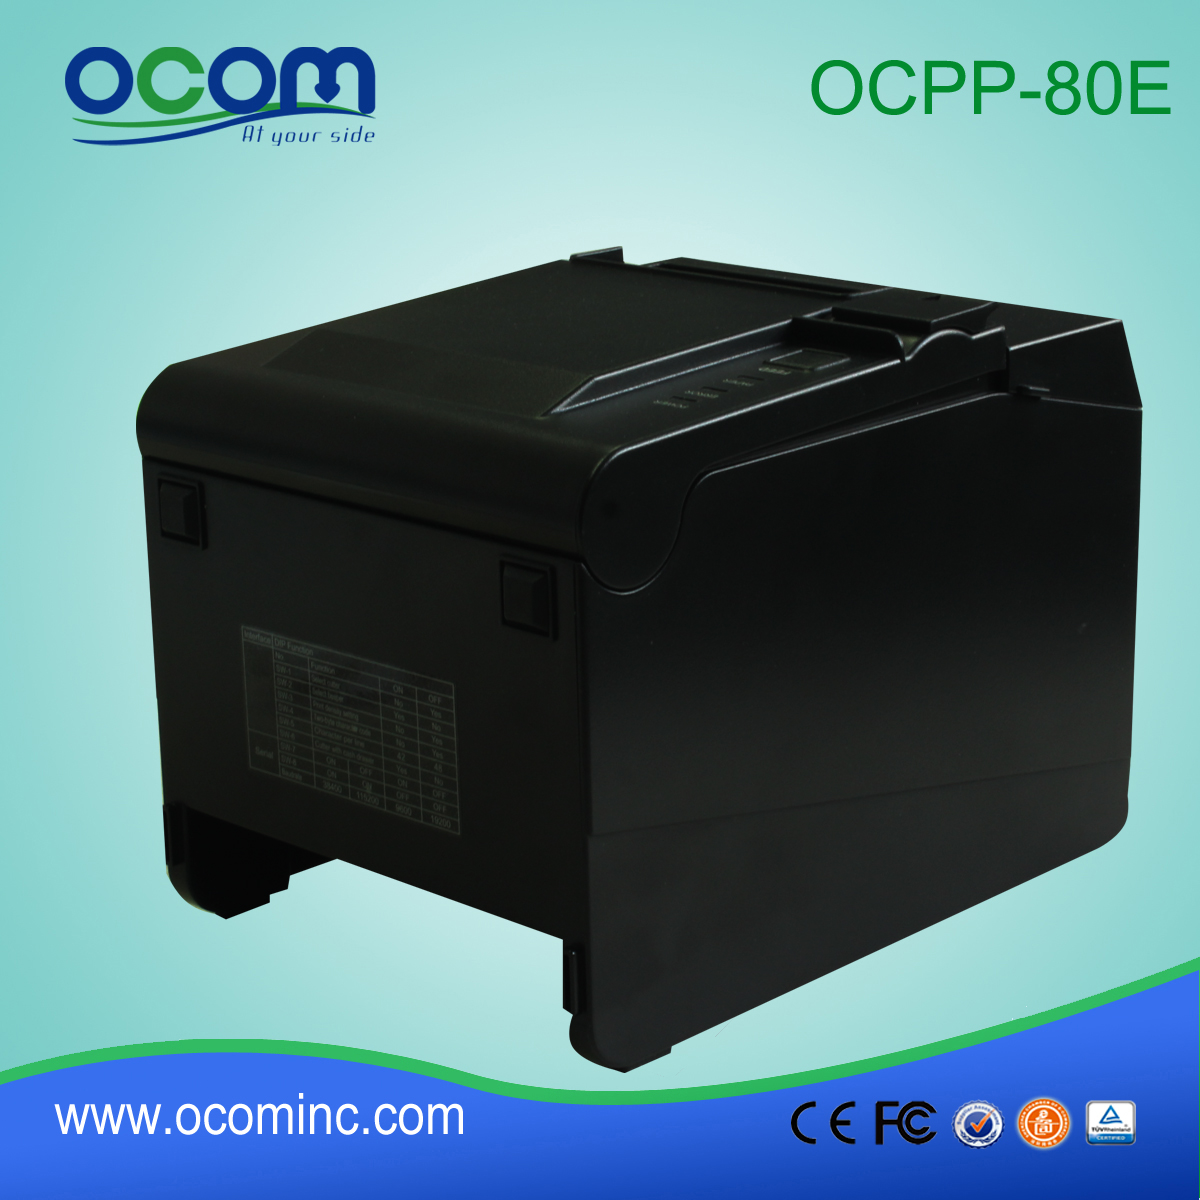 高品质票据打印机(OCPP-80E)